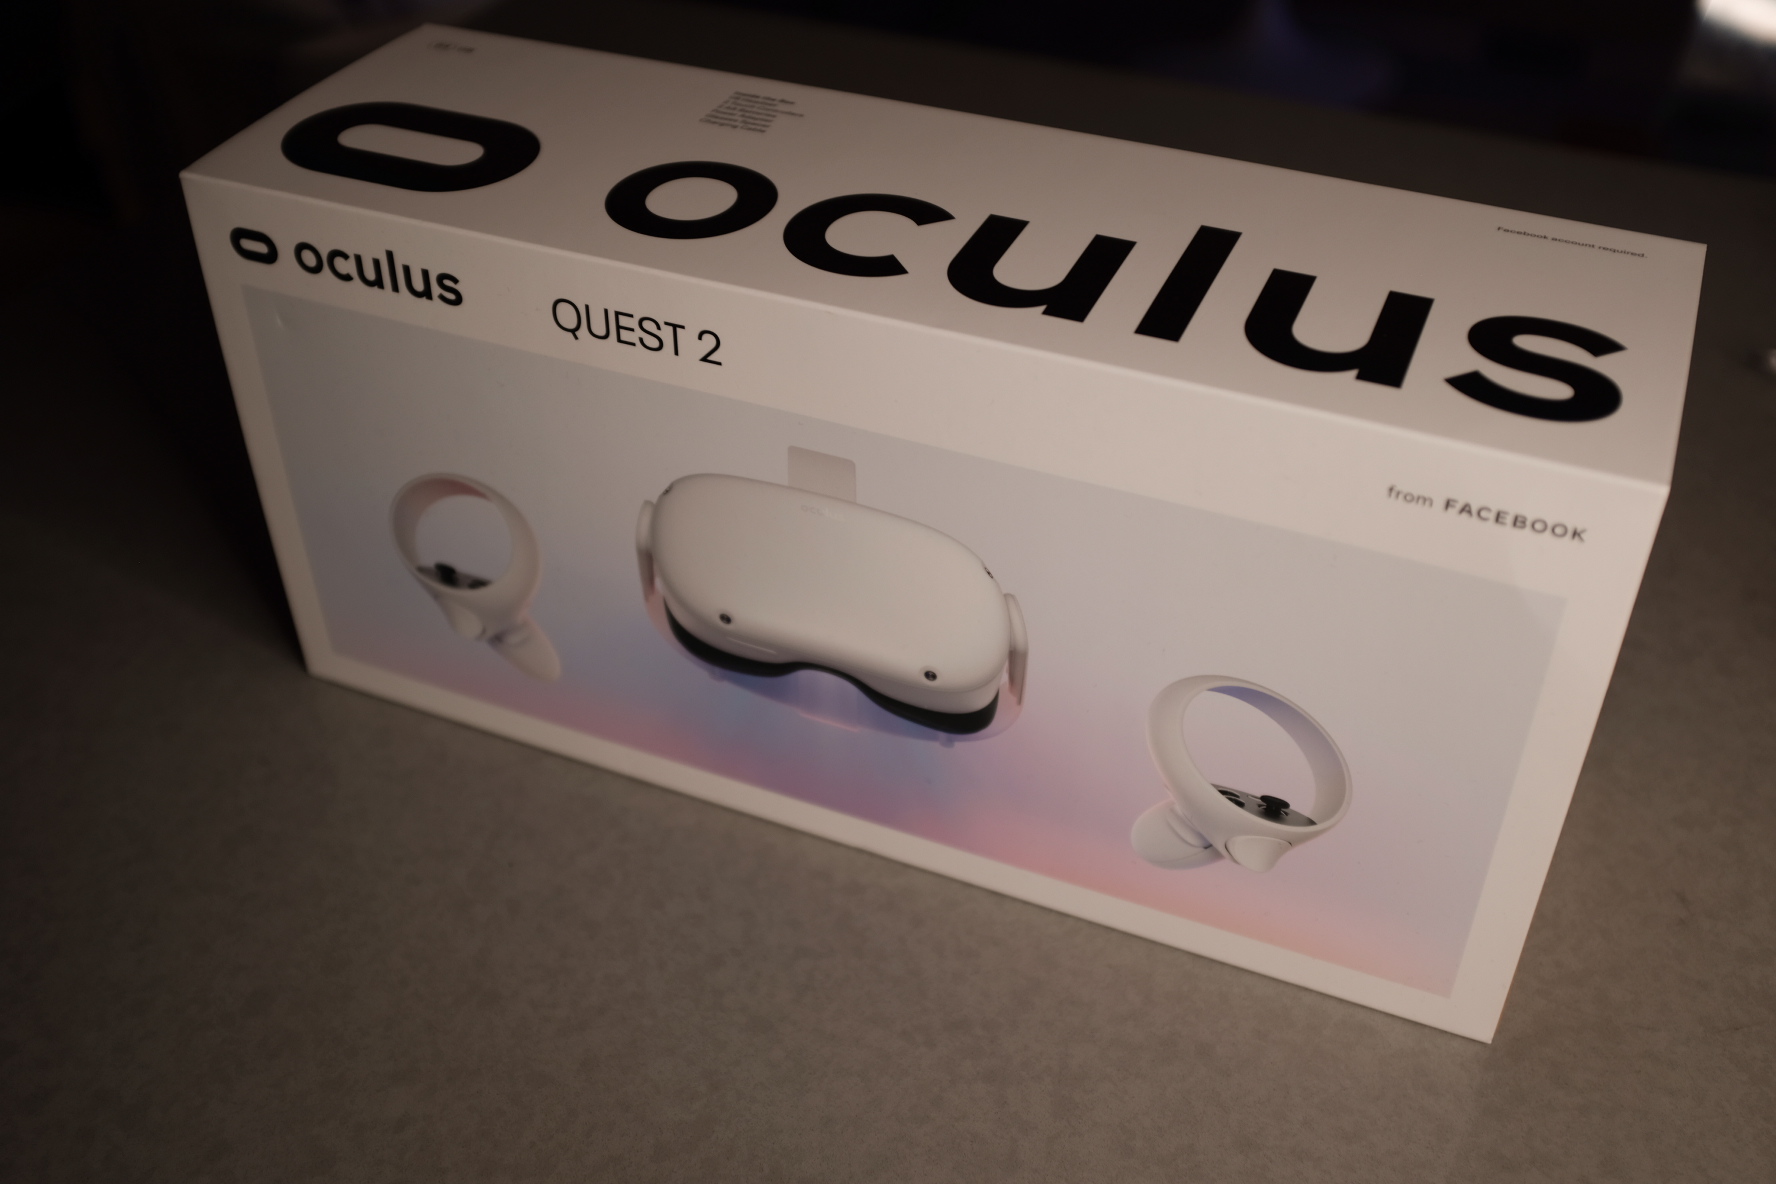 Review: Facebook's Oculus Quest 2 is outstanding | TechCrunch